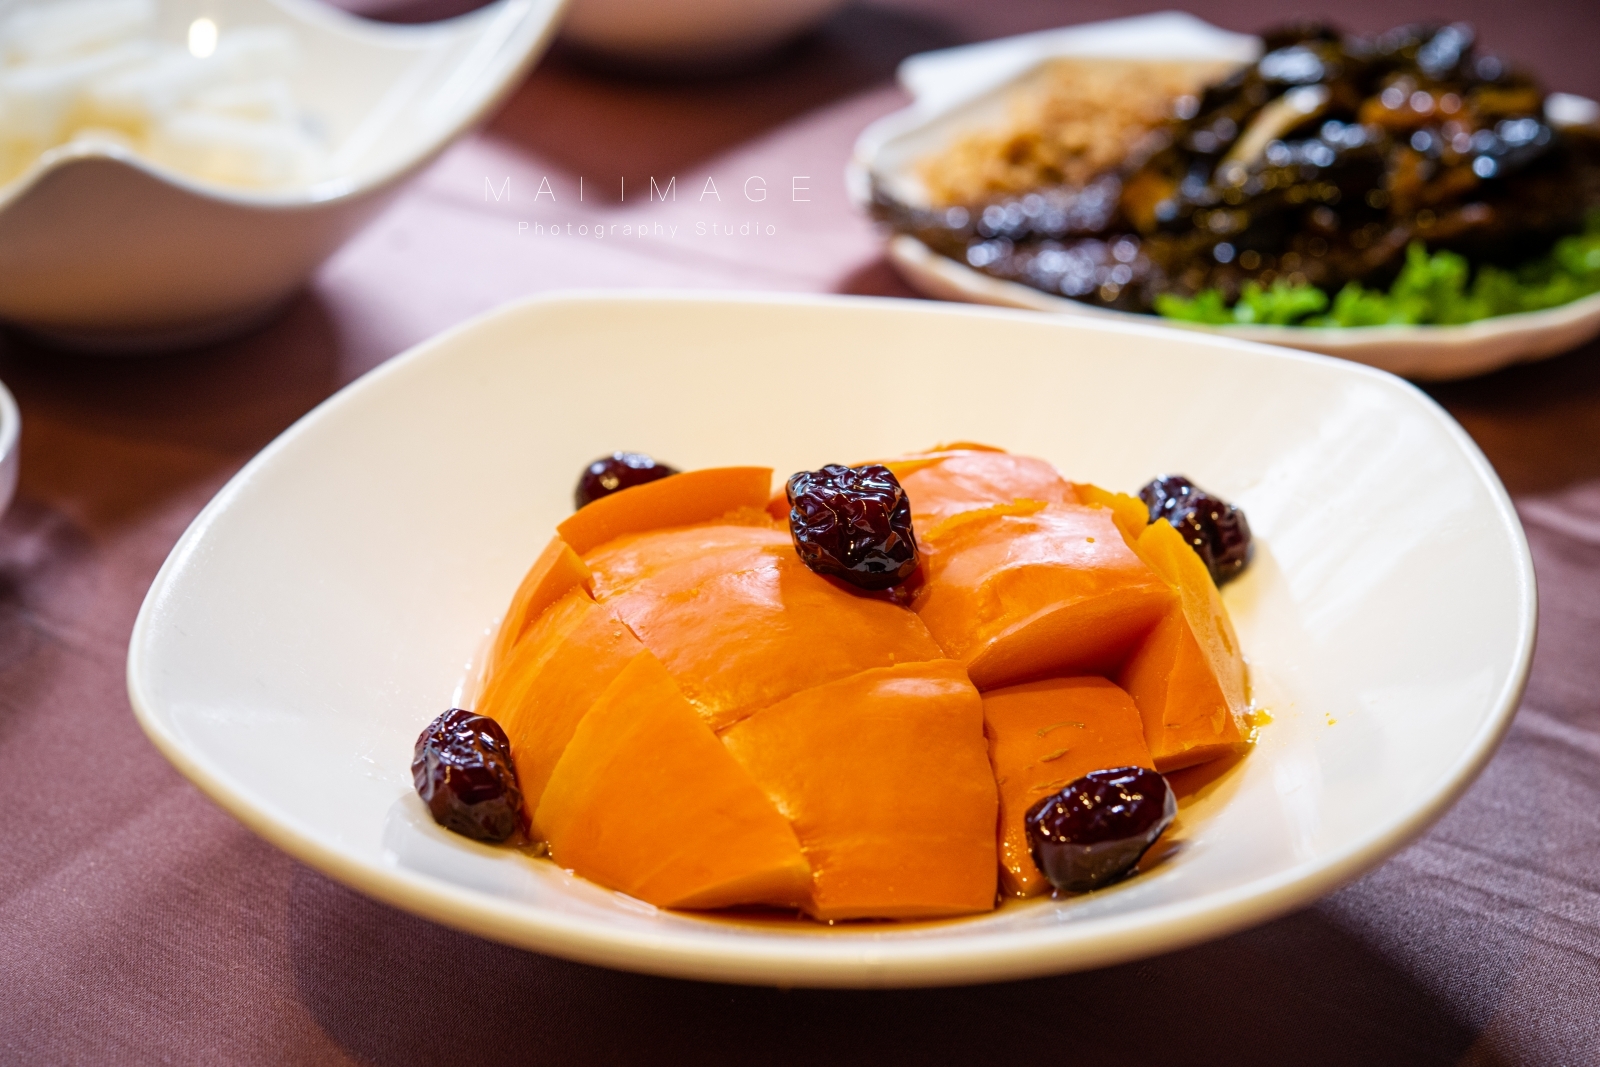 『台北美食』連兩屆米其林餐盤推薦，飄香30多年的好味道～蘇杭餐廳！經典江浙料理在家也可以輕鬆吃得到。捷運大坪林站美食